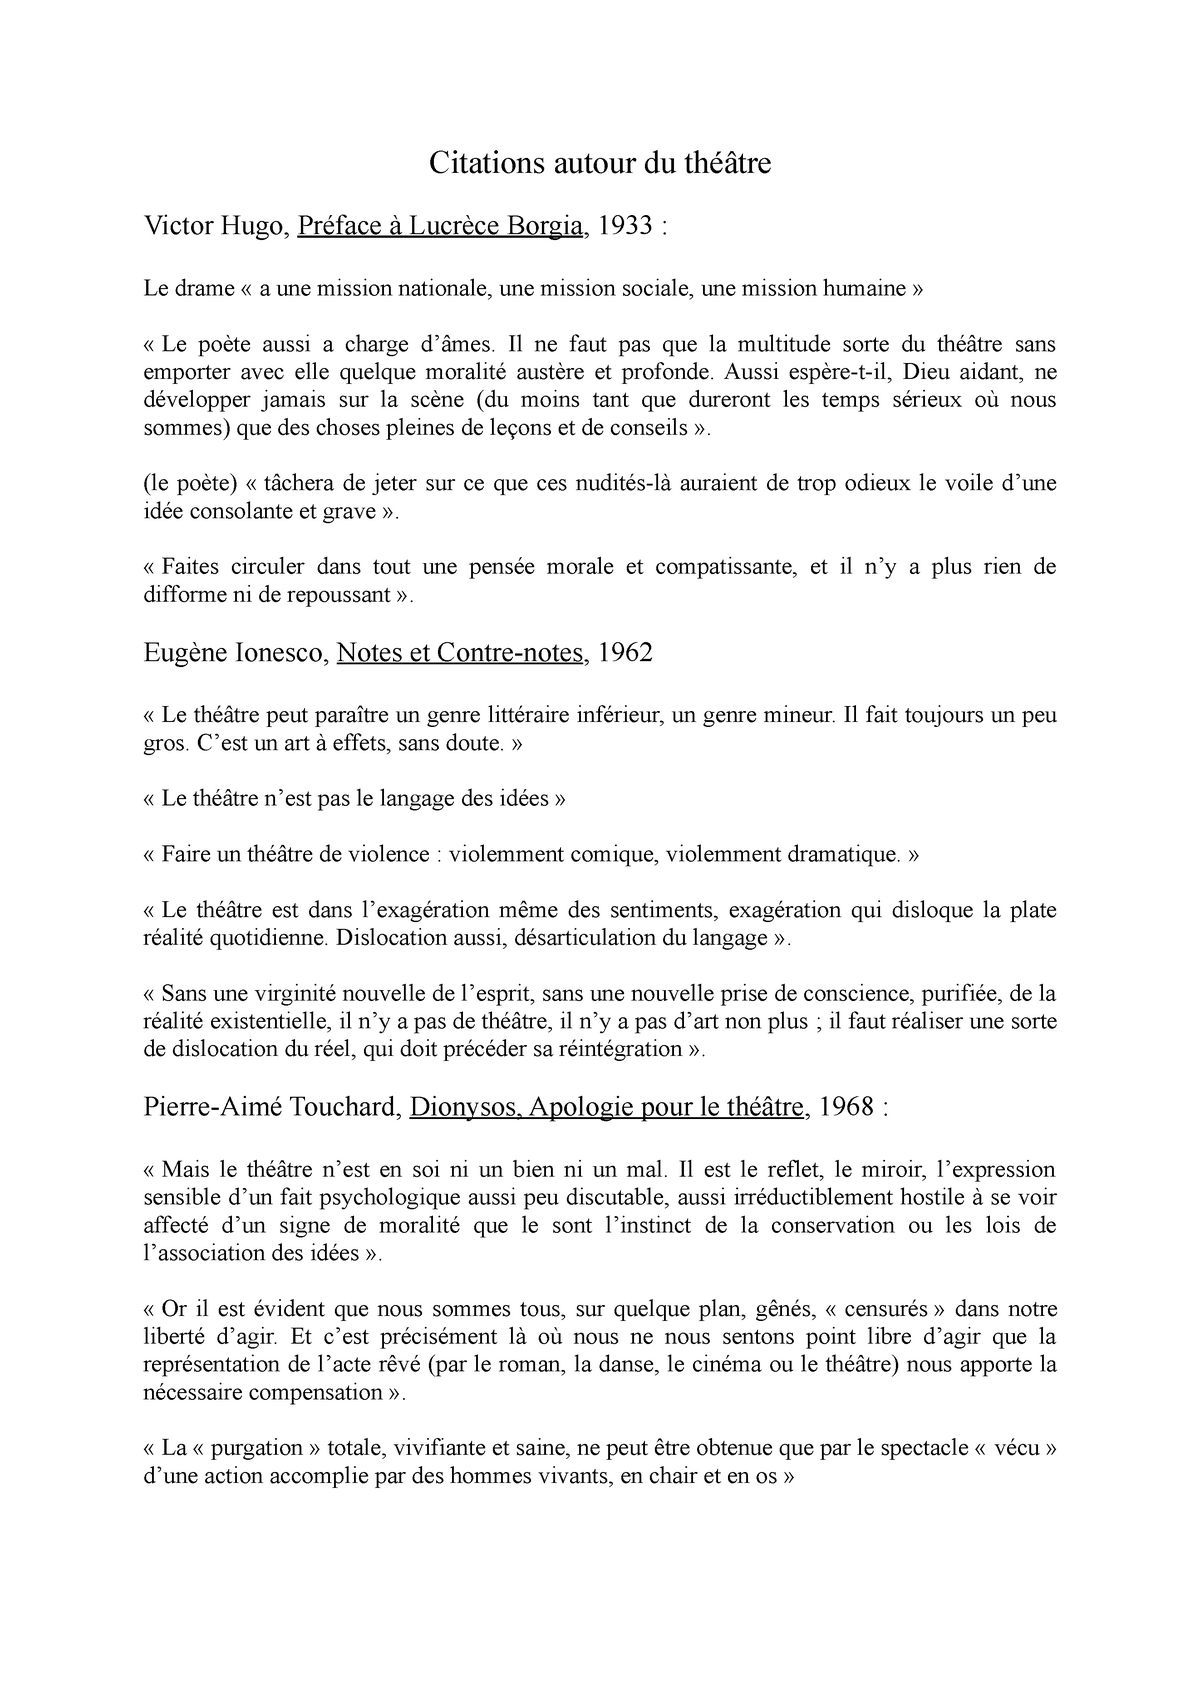 Citations Theatre Notes De Cours 2 Citations Autour Du Theatre Victor Hugo Preface A Lucrece Studocu